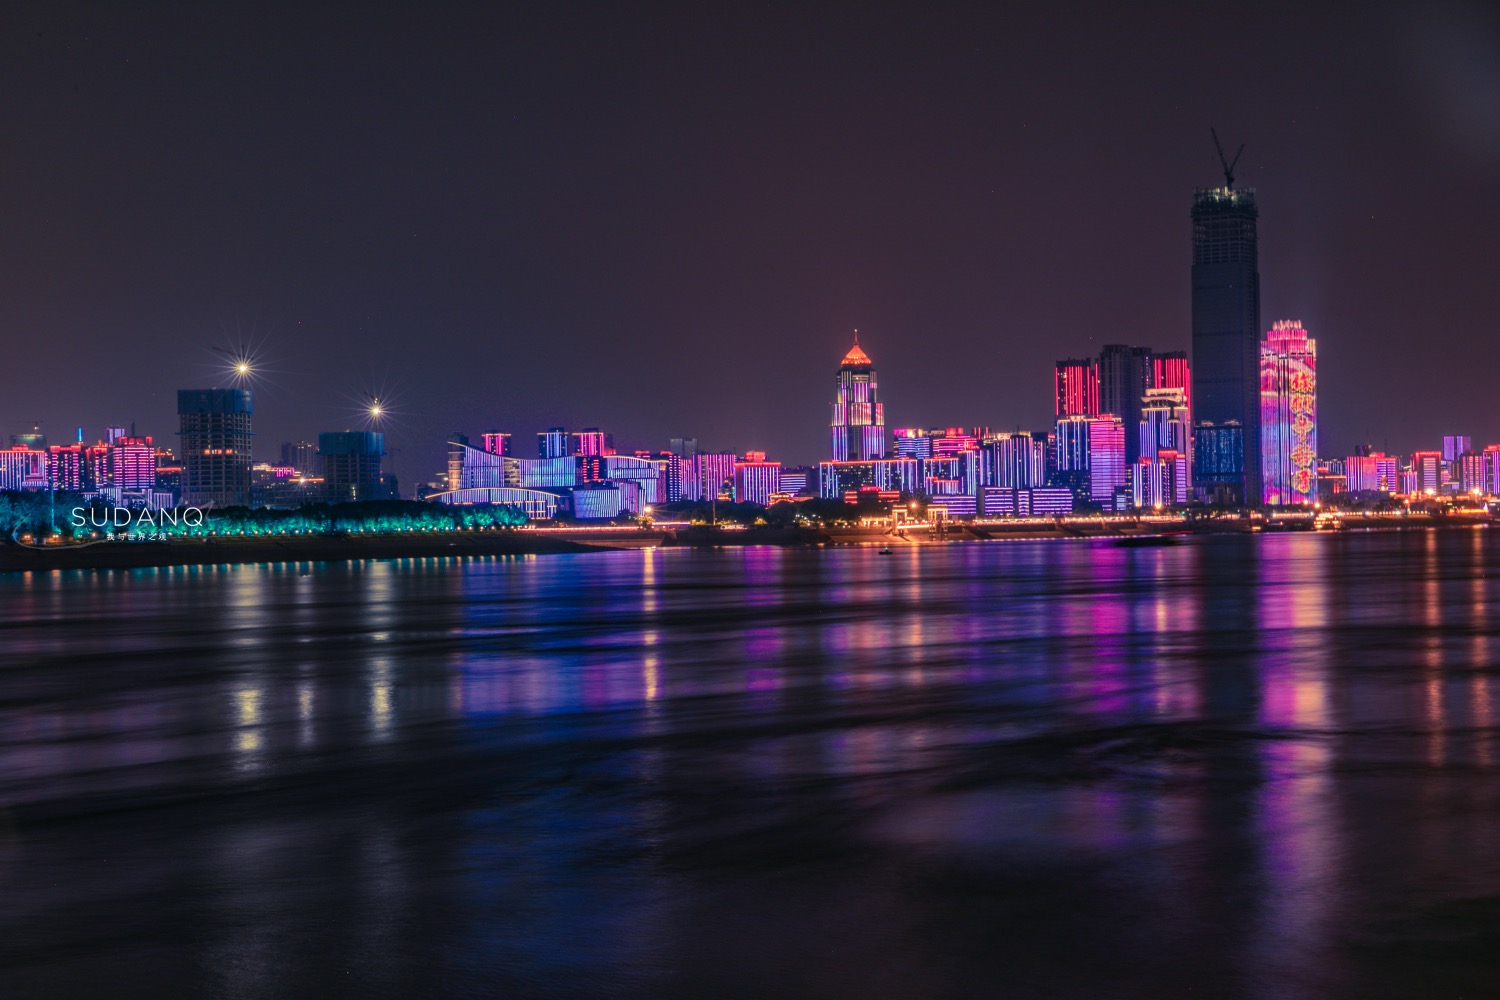 它是万里长江上的第一座大桥,是武汉最美的夜景之一,令人骄傲